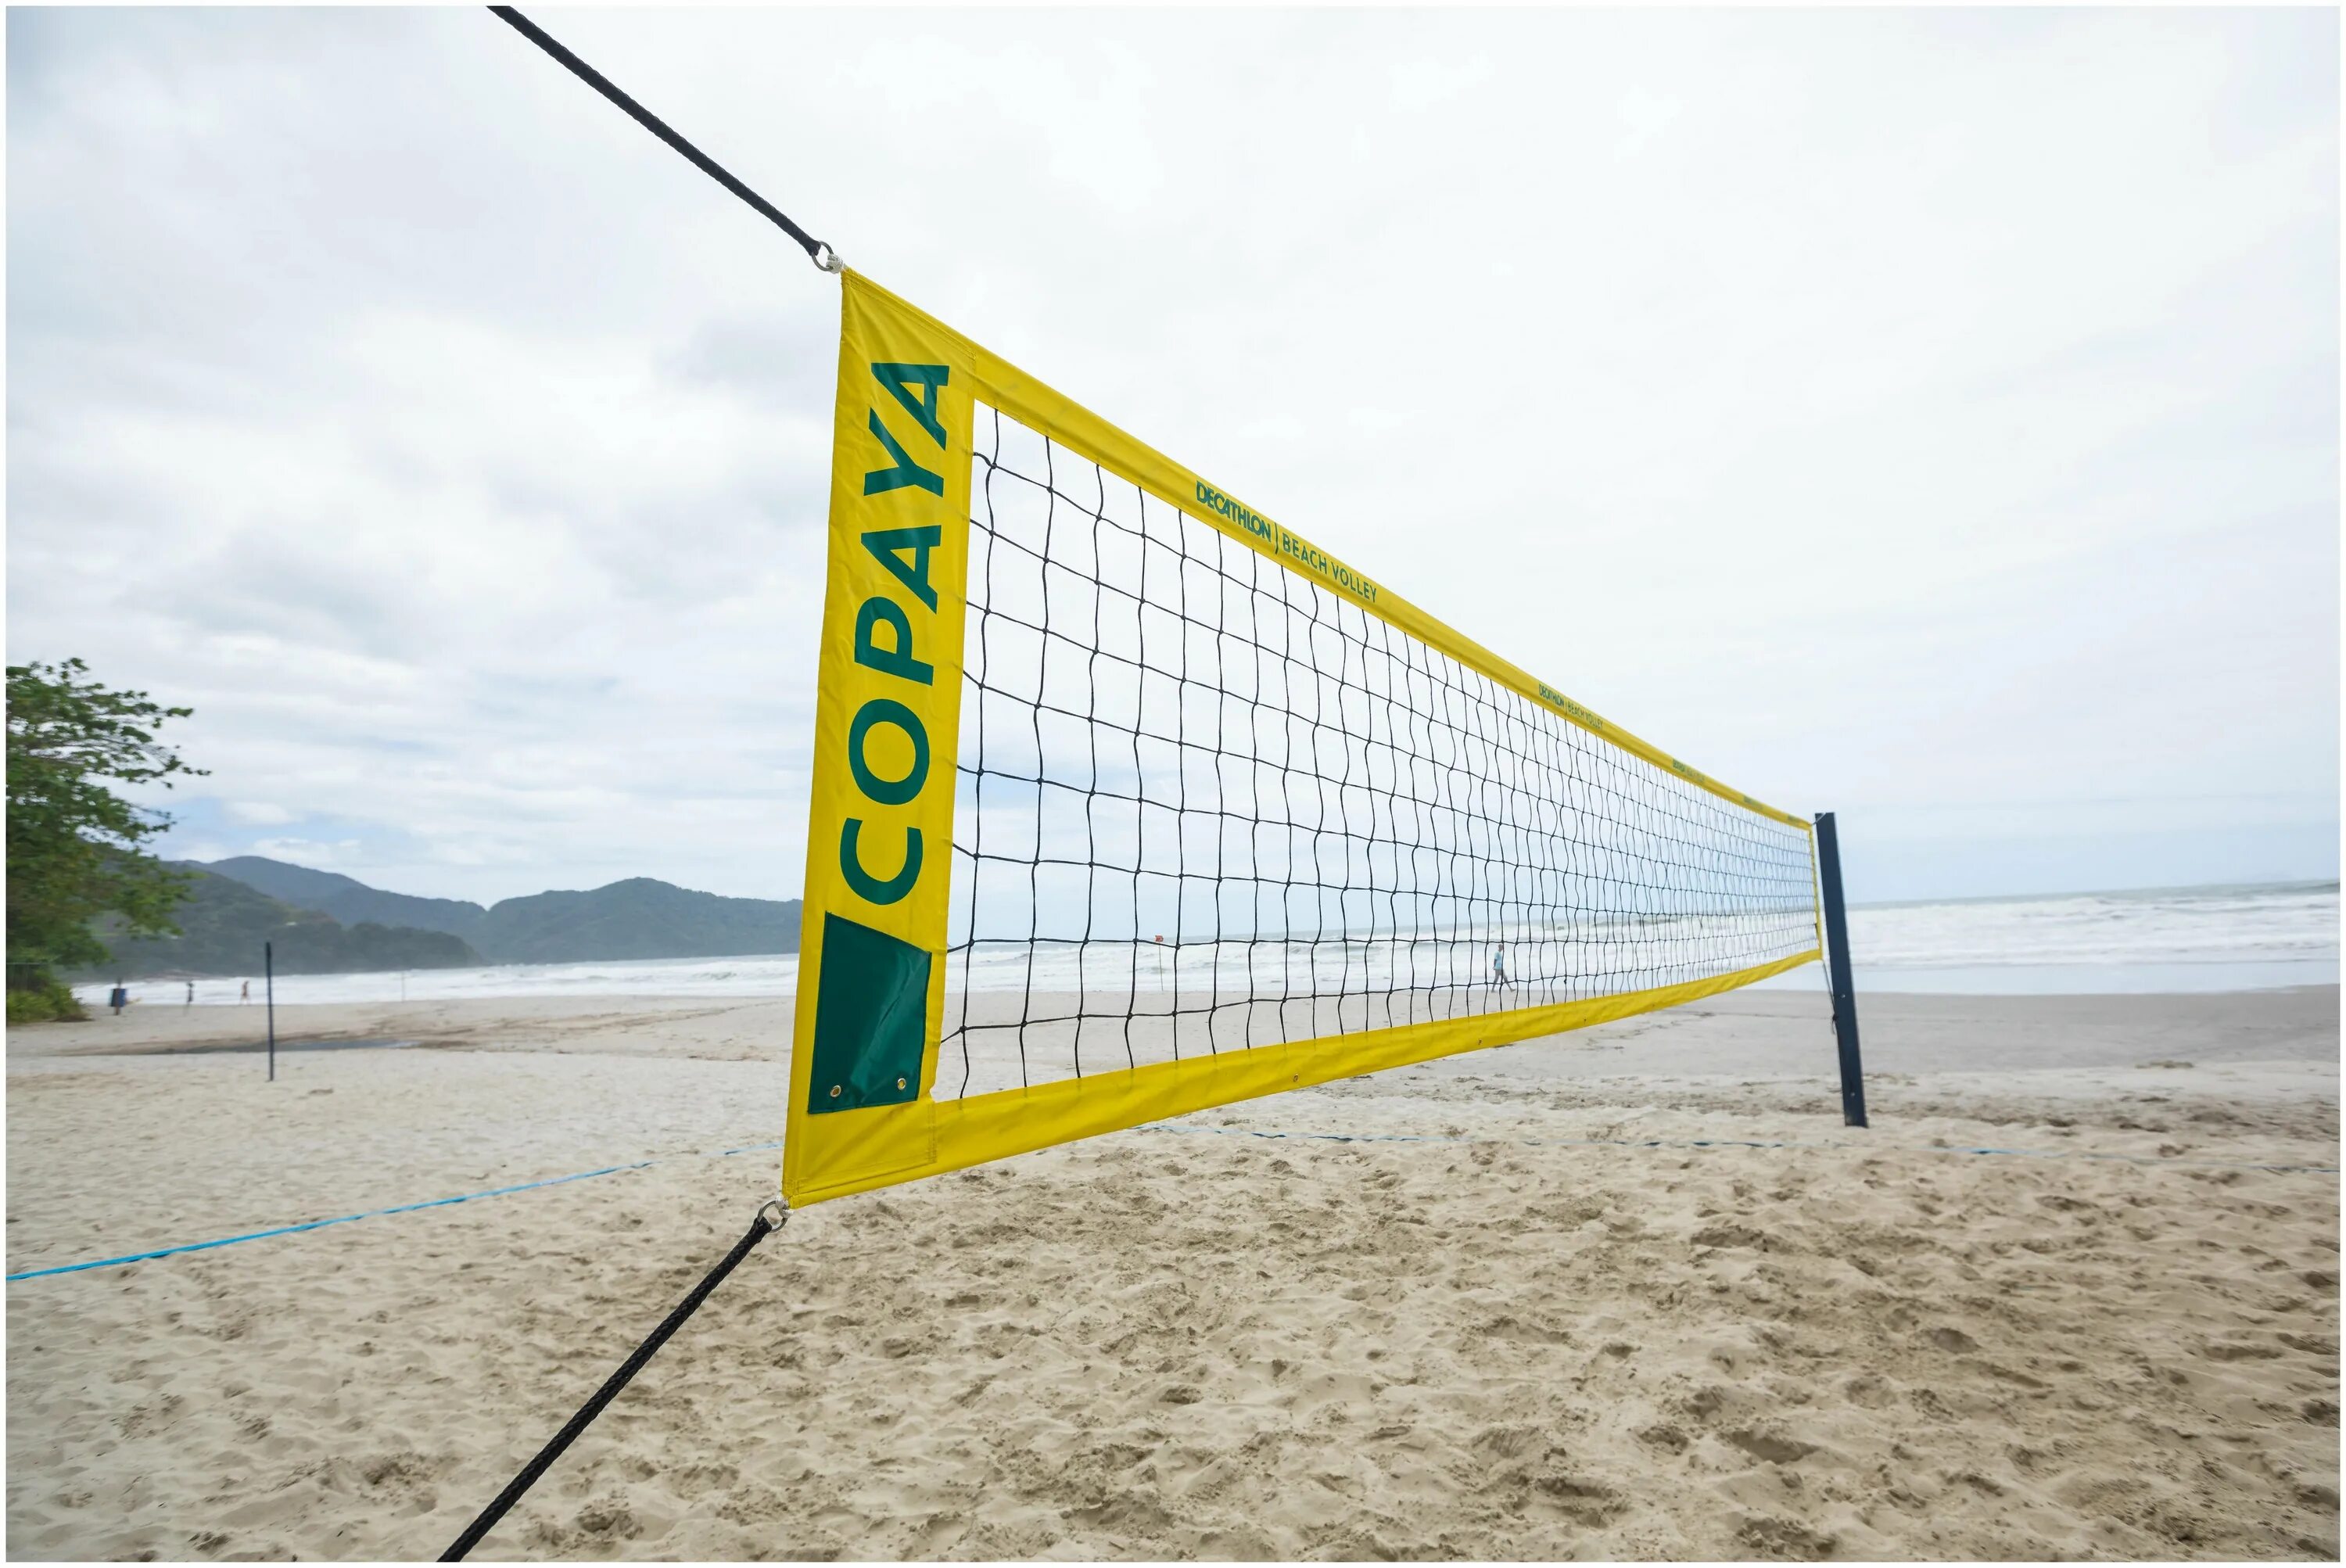 Сетка для волейбола купить. Copaya сетка волейбольная. Сетка для пляжного волейбола Декатлон. Bv900 Copaya комплект для пляжного волейбола. KIPSTA bv900 комплект для волейбола.